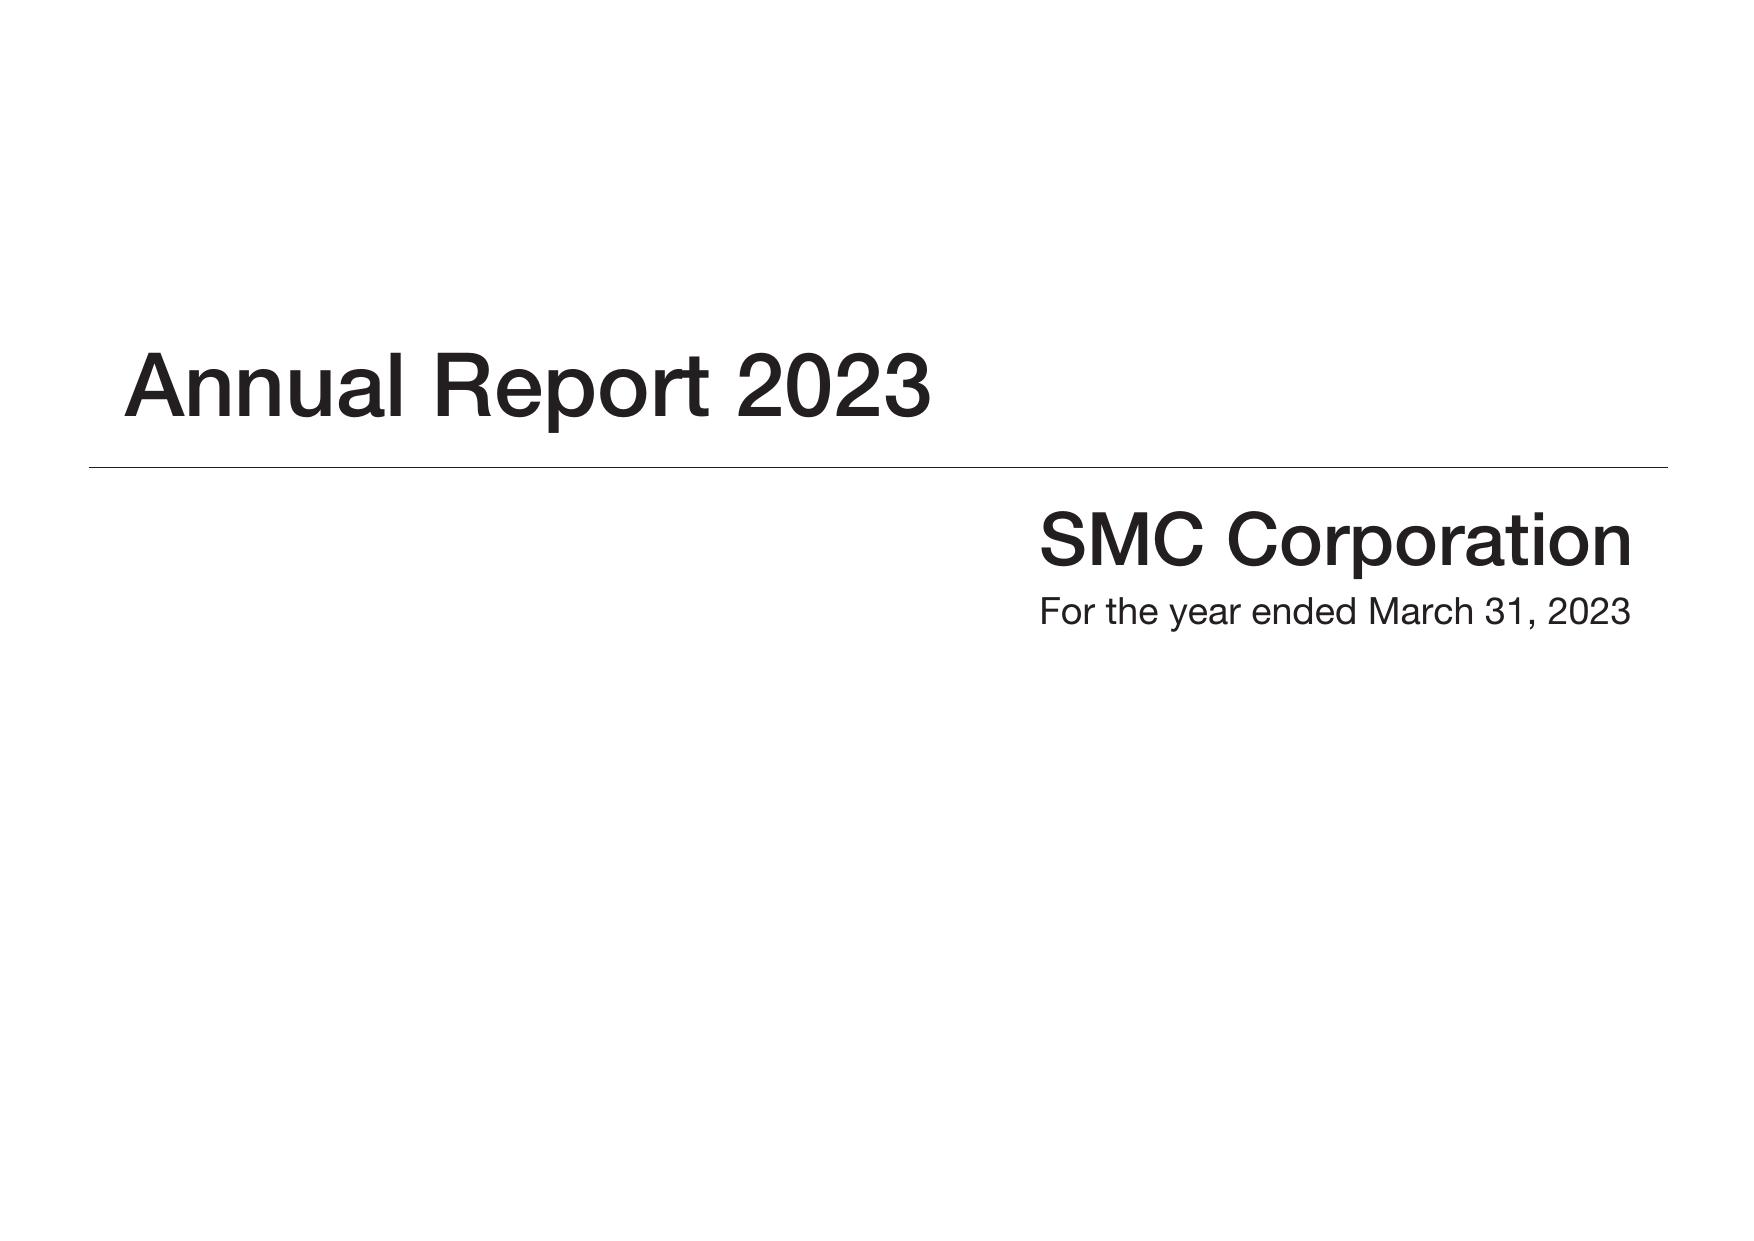 SMCWORLD 2023 Annual Report